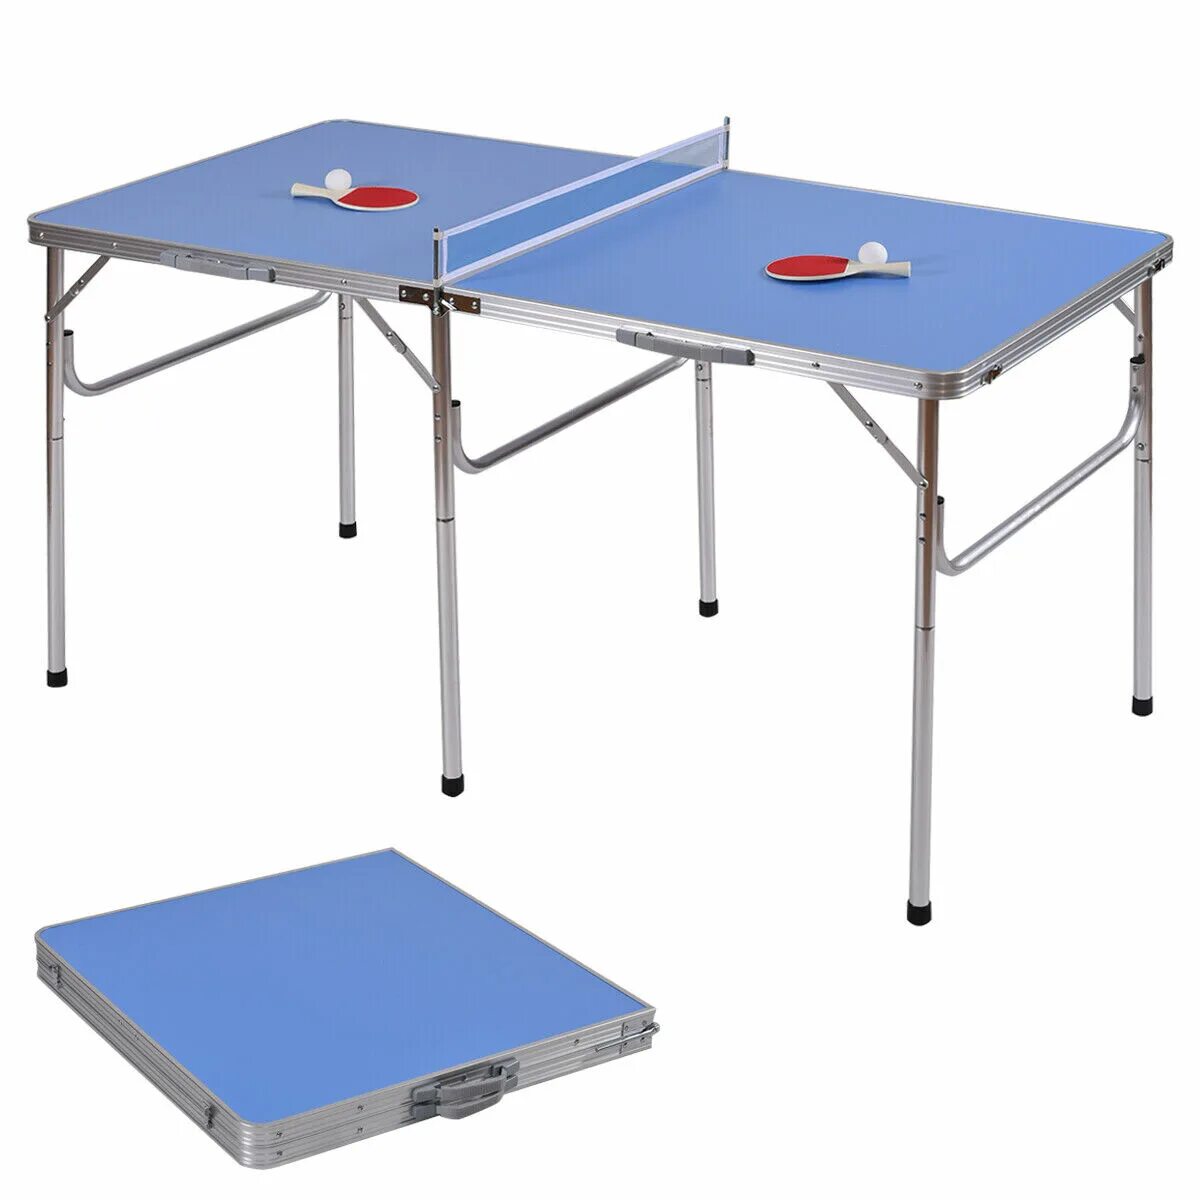 Складной стол для пинг понга. Пинг понг складной. Стол для настольного тенниса складной. Теннисный стол раскладной. Стол для пинпонга